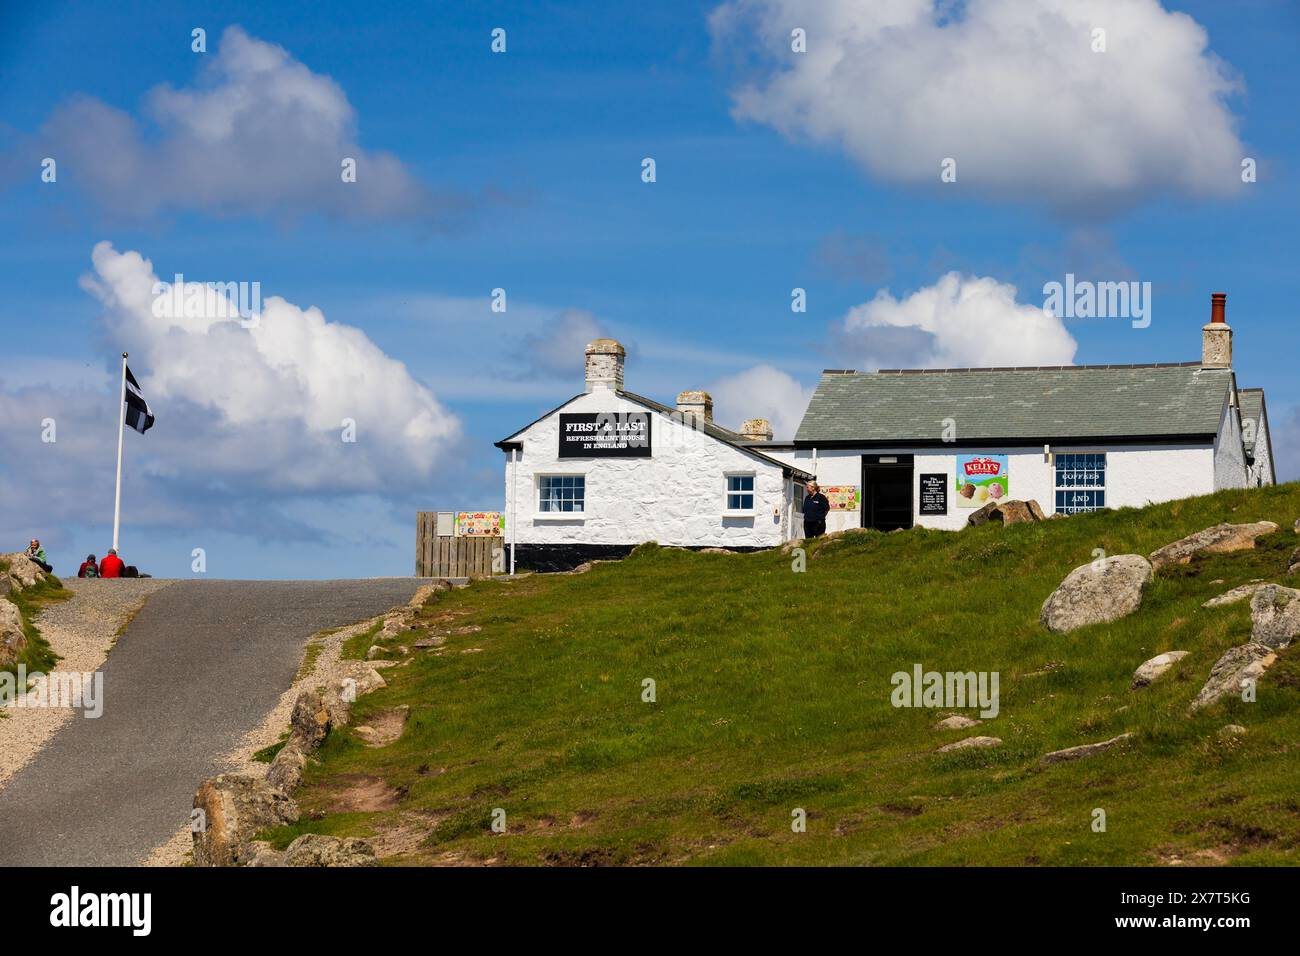 Prima e ultima casa di ristoro, Inglands Most Westerly Point, Lands End, Cornovaglia, West Country, Inghilterra Foto Stock